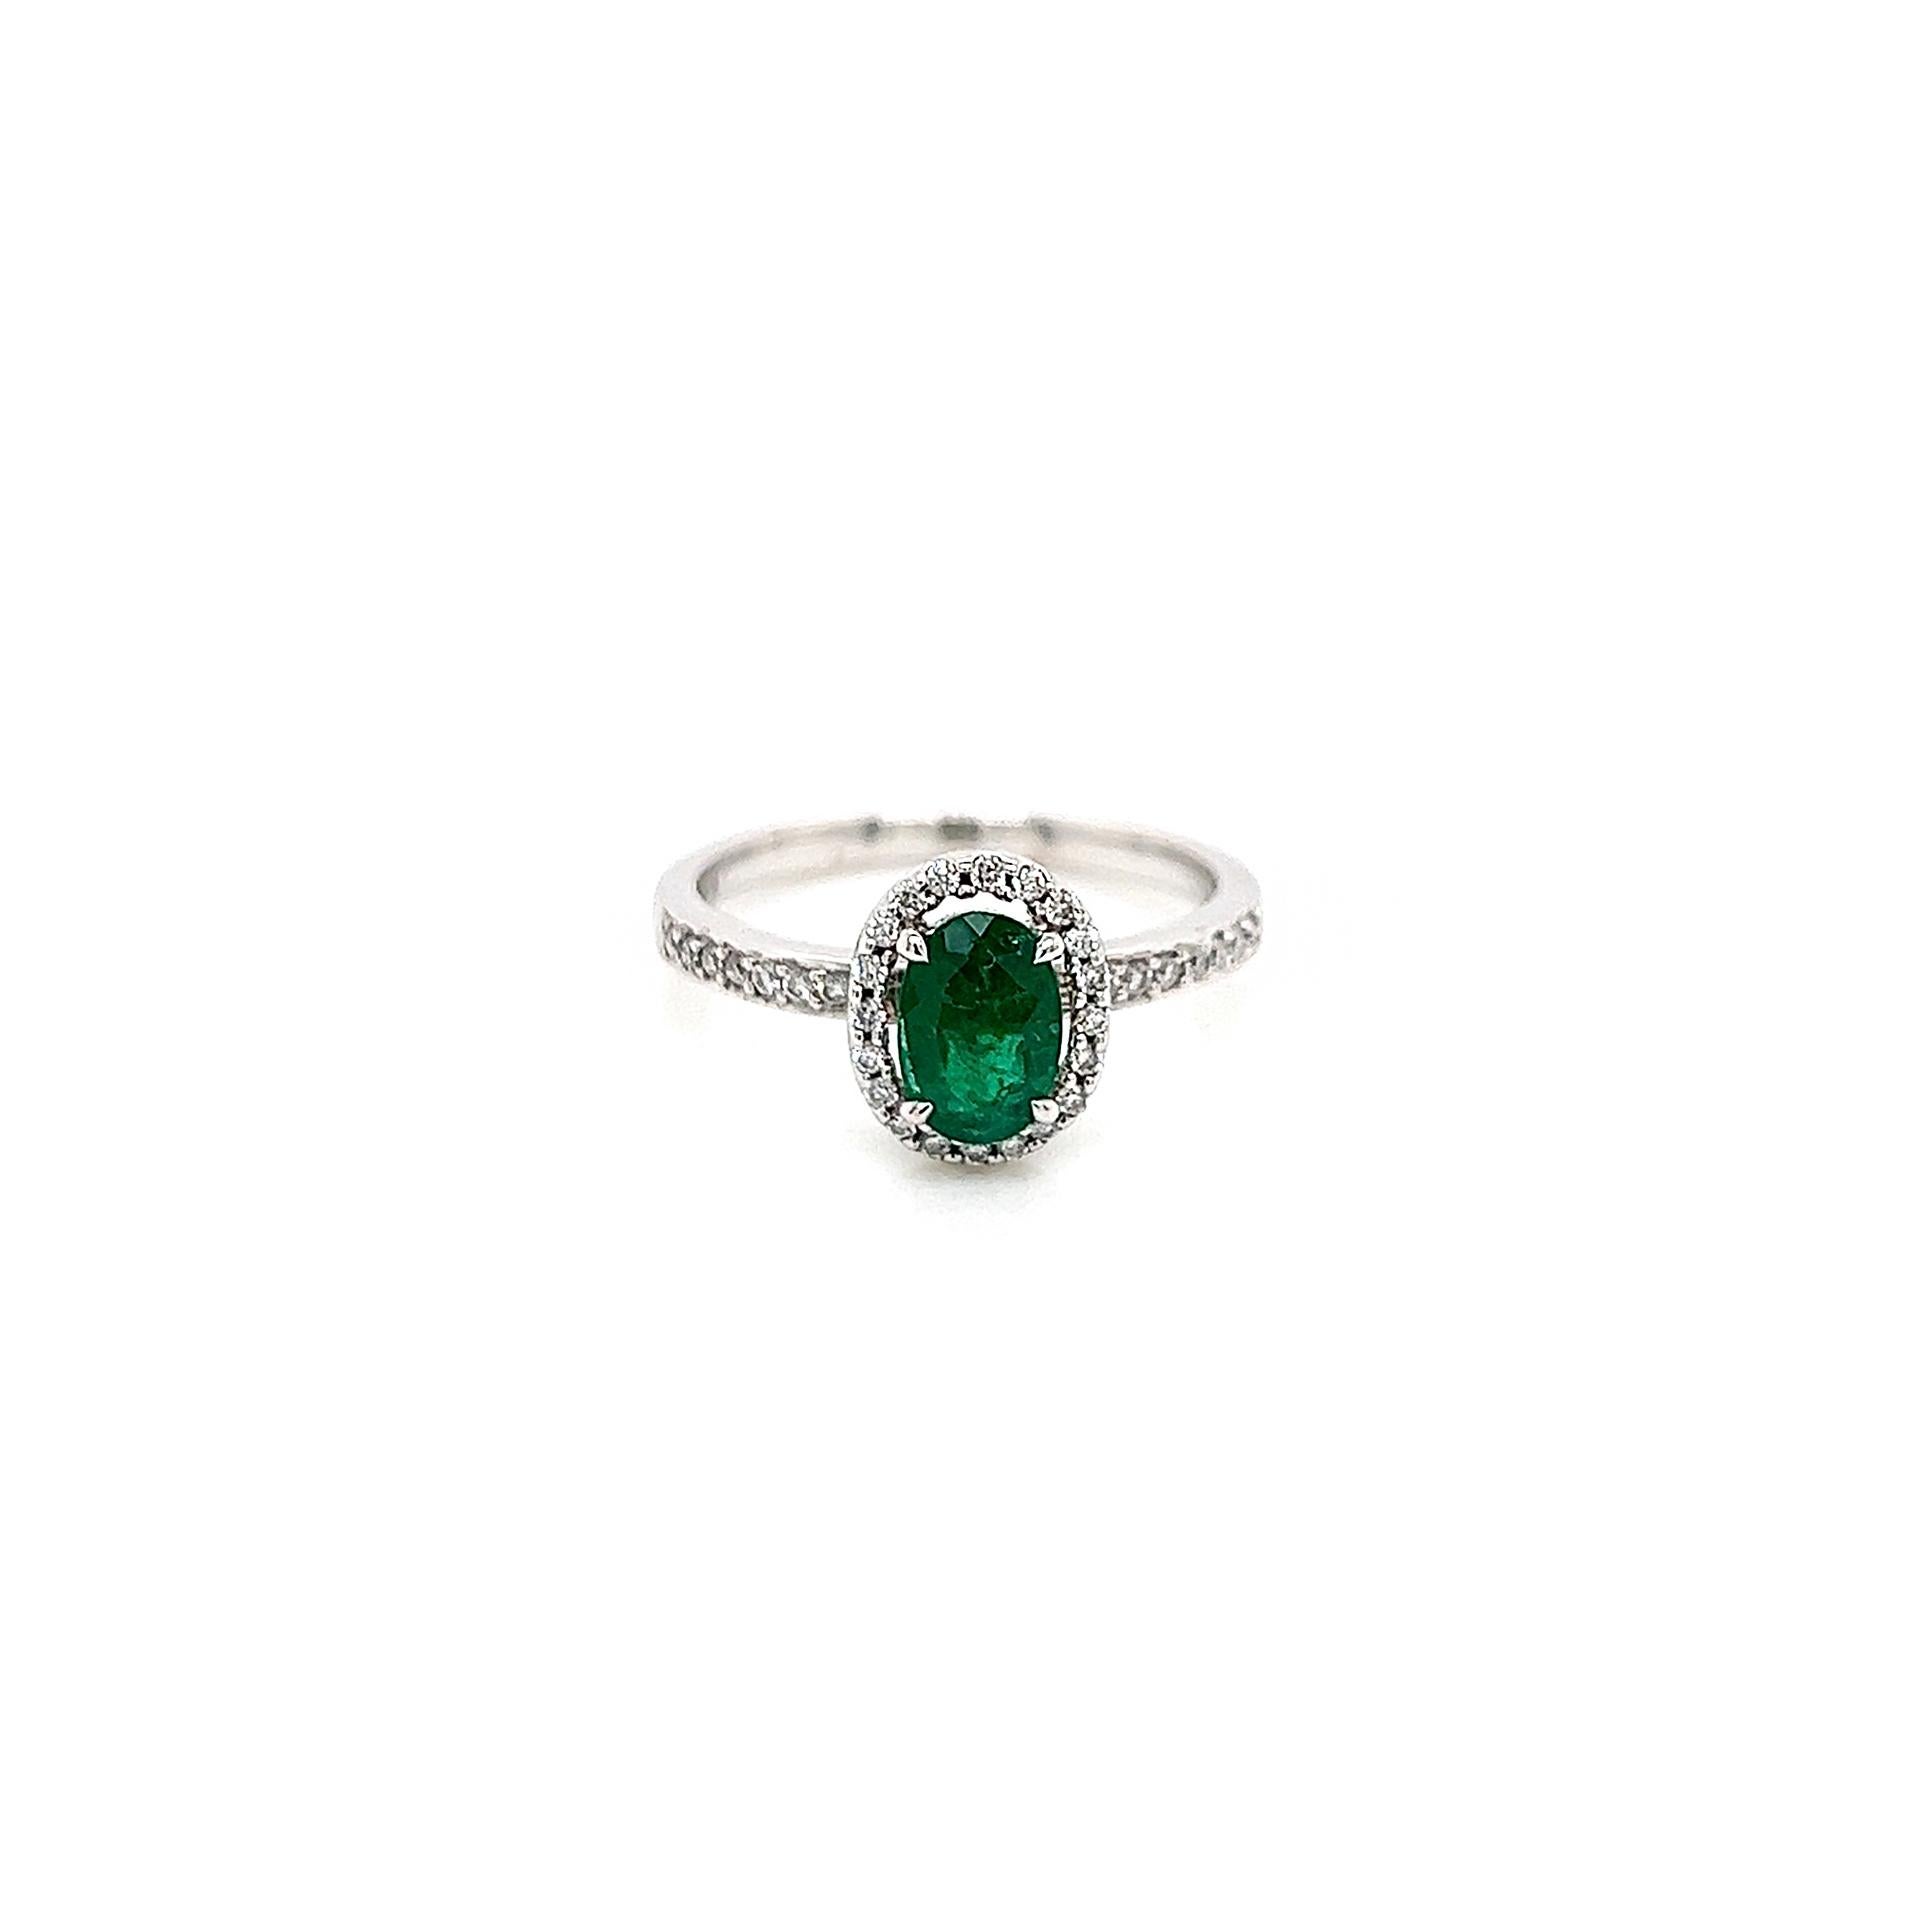 0.bague pour femme avec émeraude verte et diamant de 74 carats

-Type de métal : or blanc 18K
-émeraude verte colombienne ronde 0.55Carat
-diamants naturels ronds de 0,19 carat, couleur G-H, pureté SI
-Taille 6.5

Fabriqué à New York